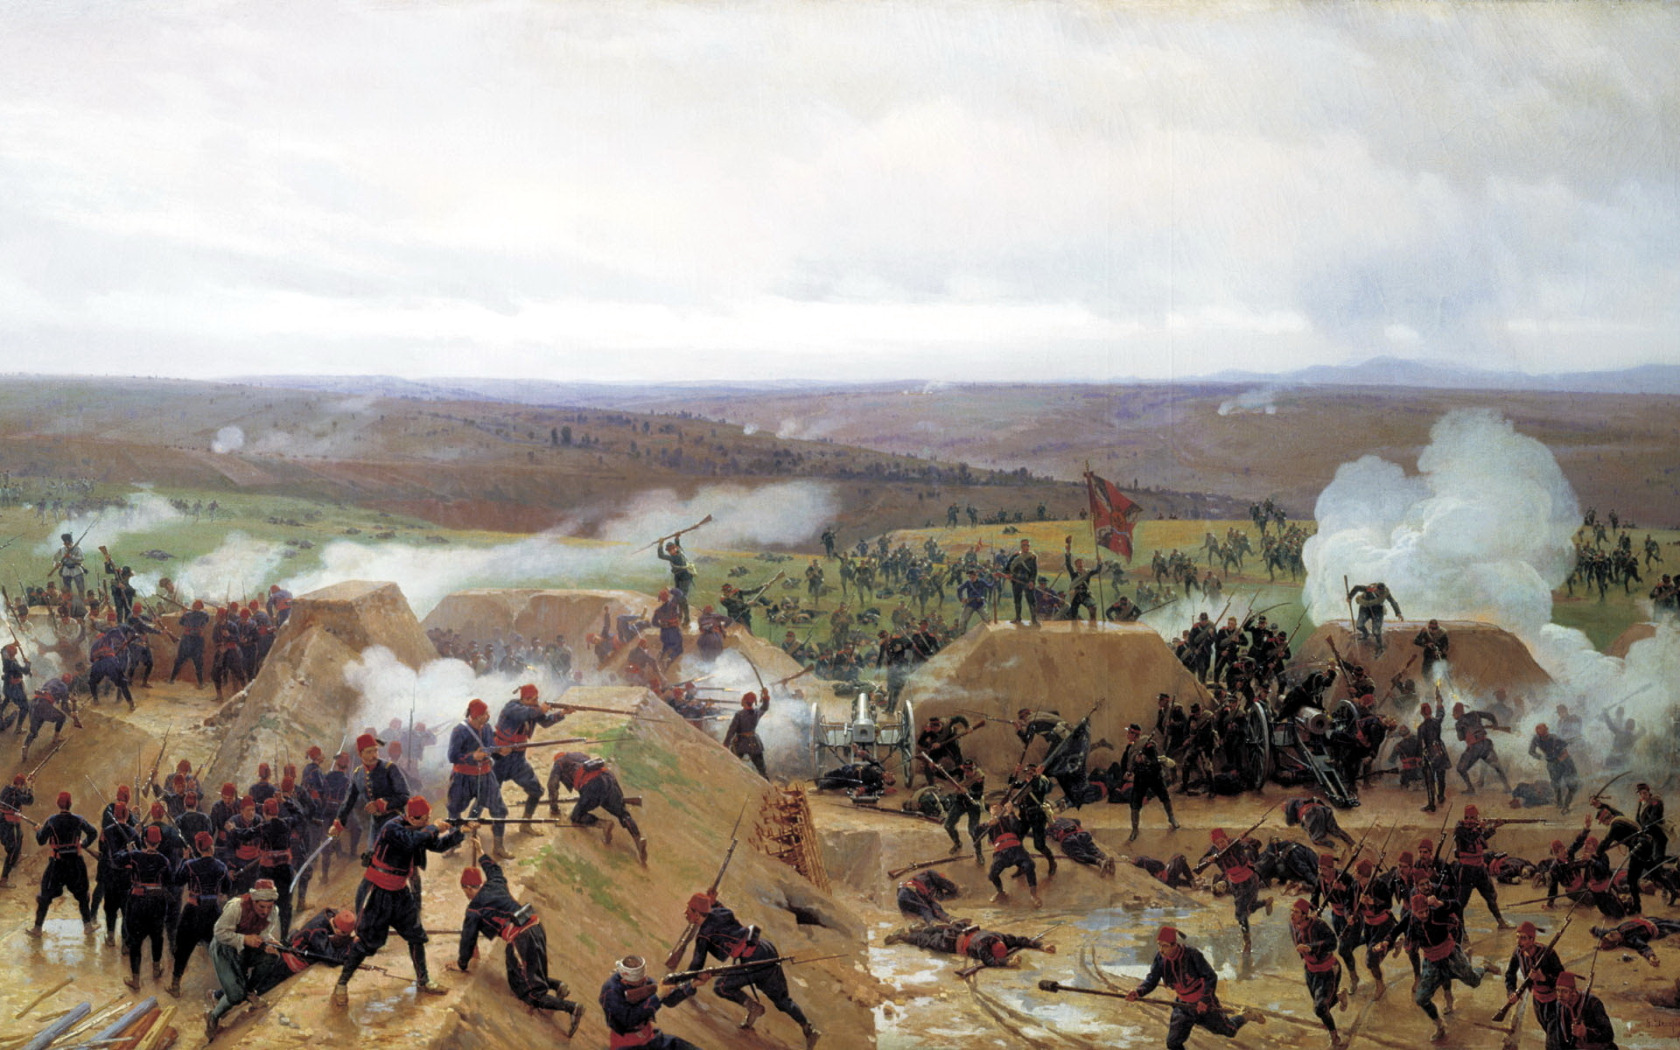 Россия одержала победу в русско турецкой войне. Сражение под Плевной 1877-1878.